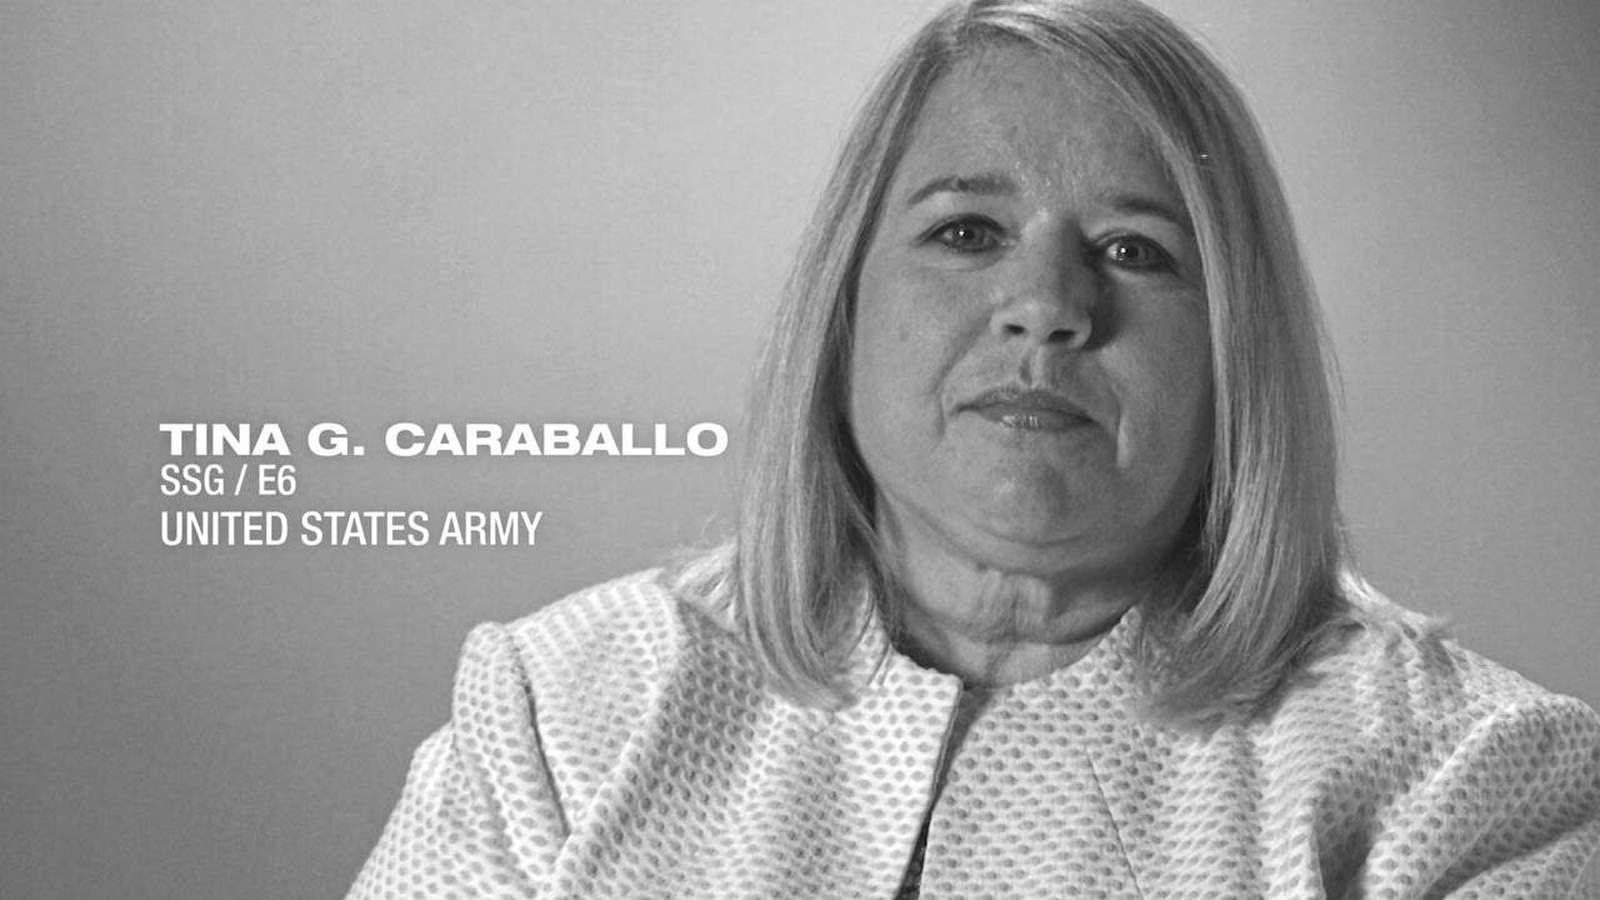 U.S. Army SSG/E6 Tina Caraballo shares her story